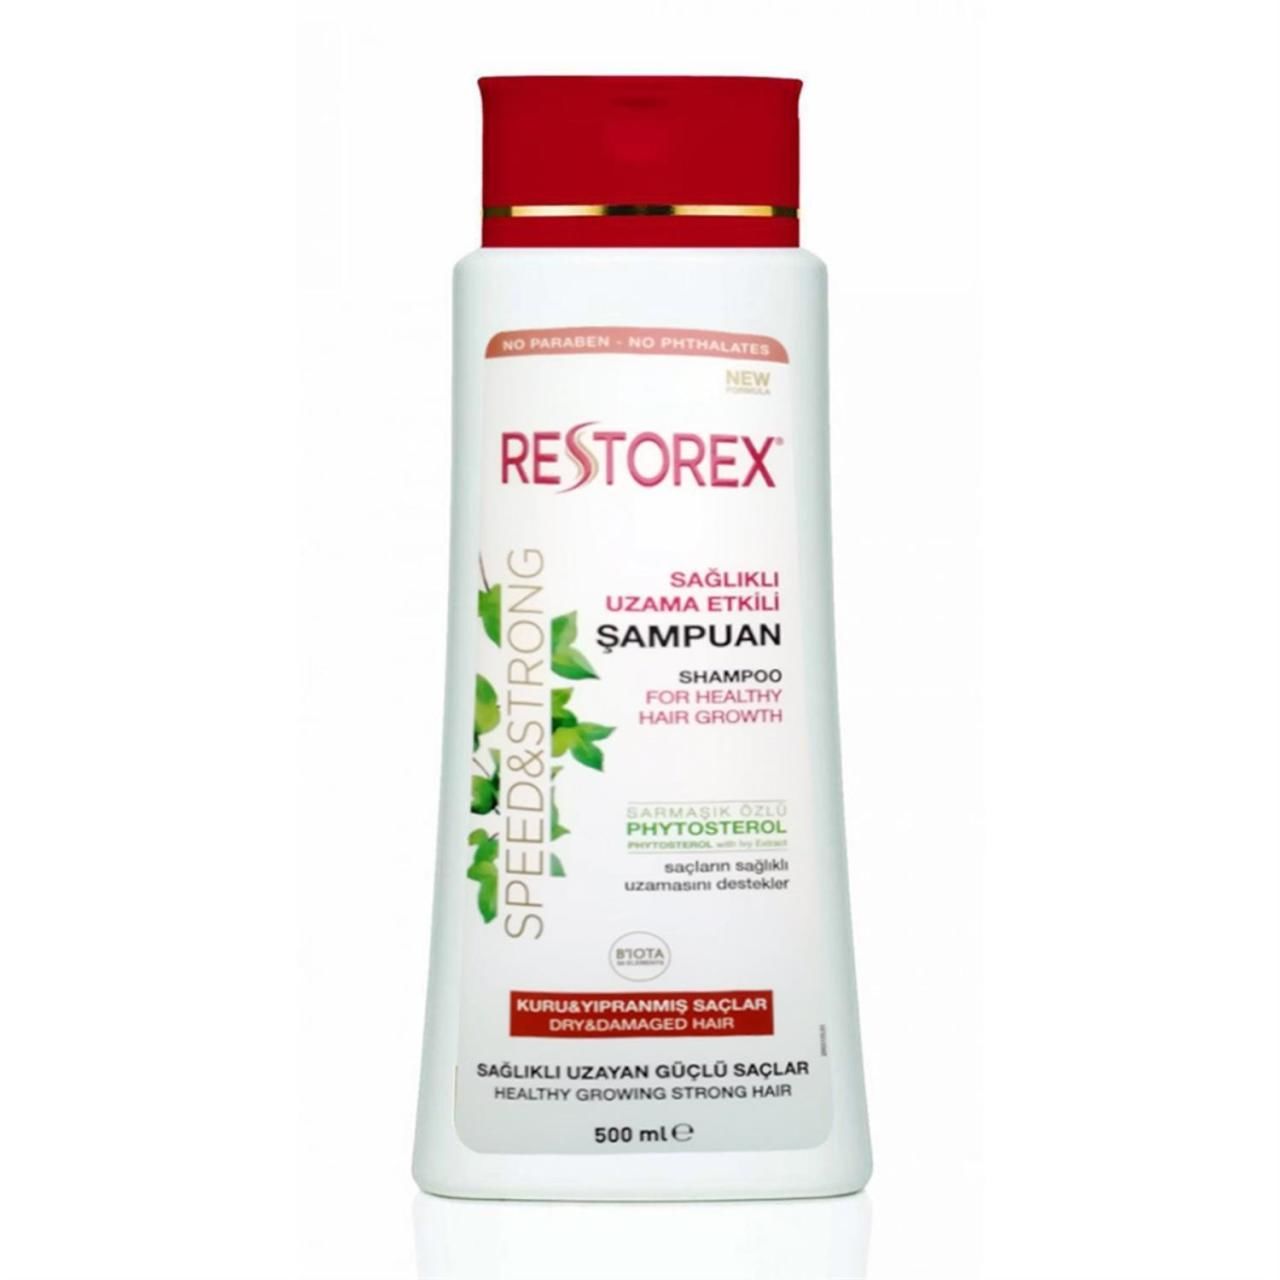 Restorex Şampuan 500 ml Kuru ve Yıpranmış Saçlar Onarıcı Bakım Saçlar Sağlıklı Uzama Etkili